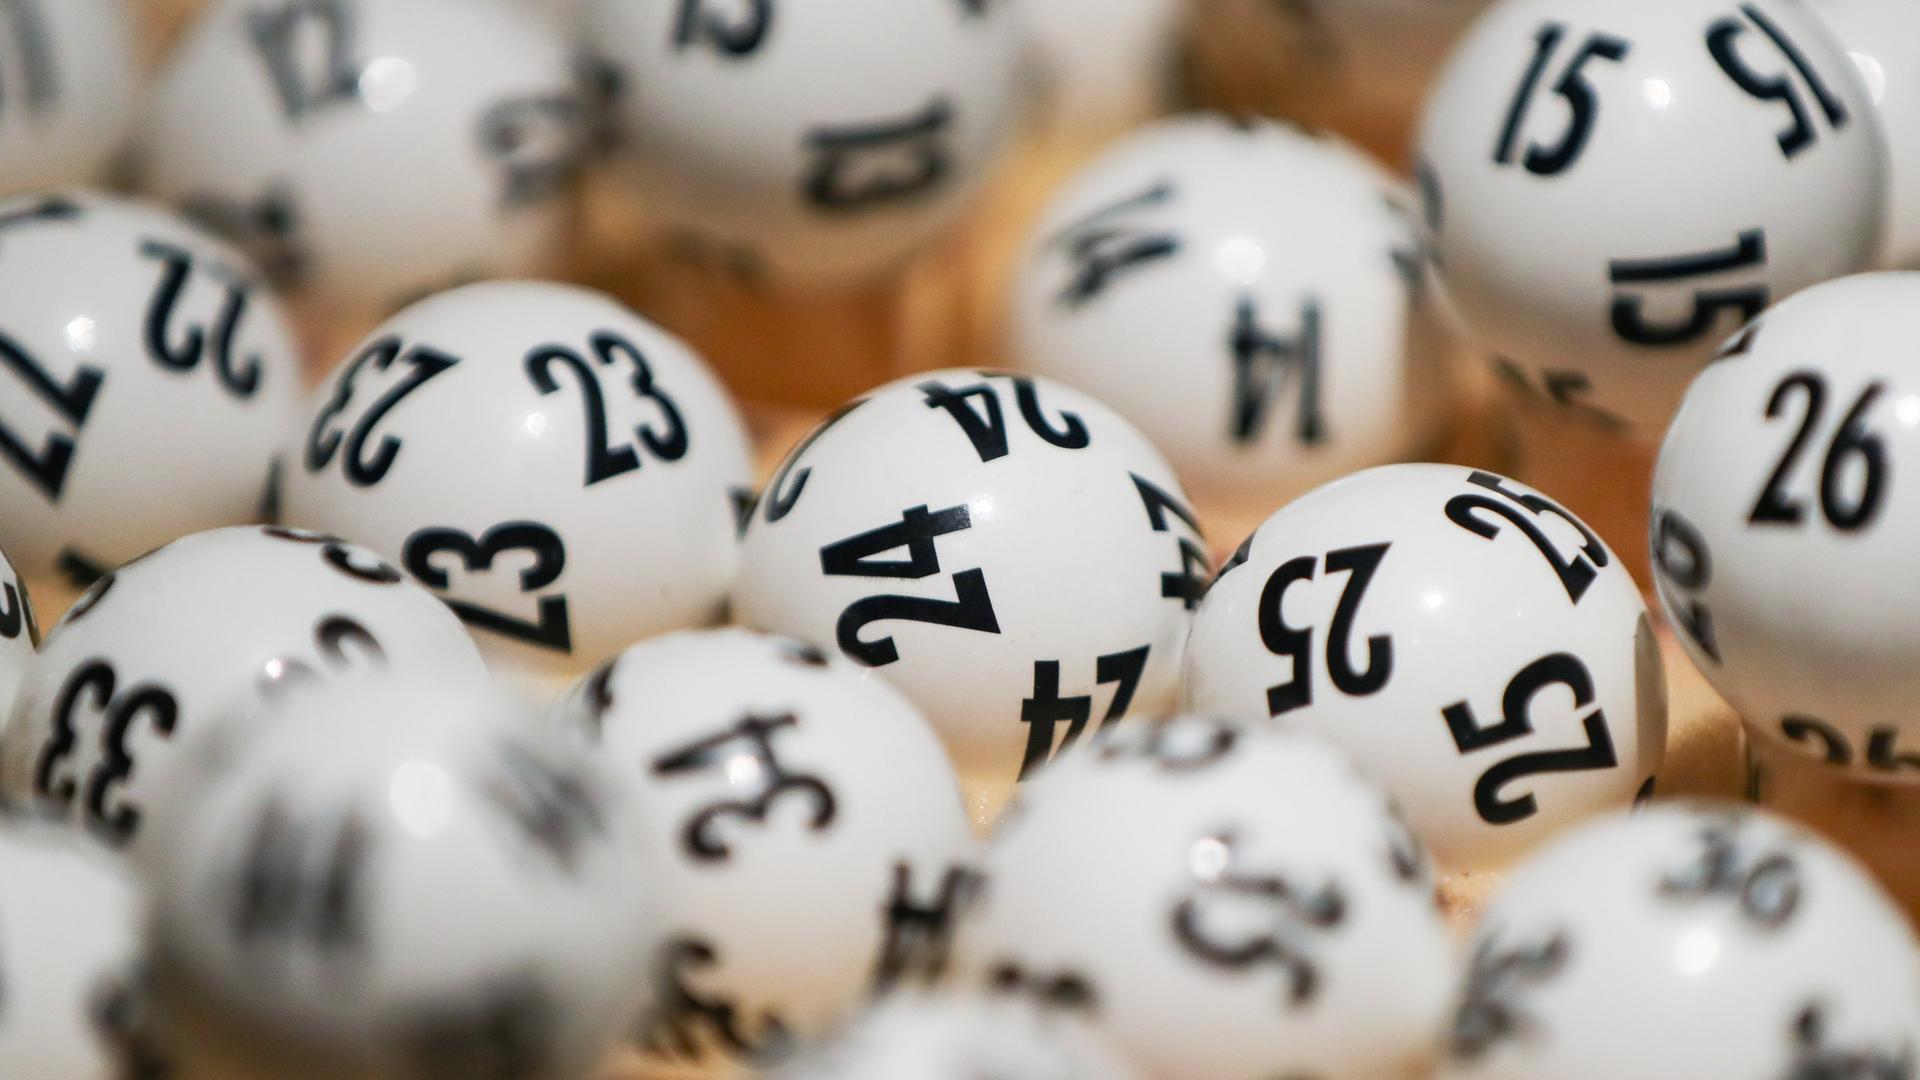 Weiße Lottokugeln mit schwarzen Zahlen liegen übereinander.